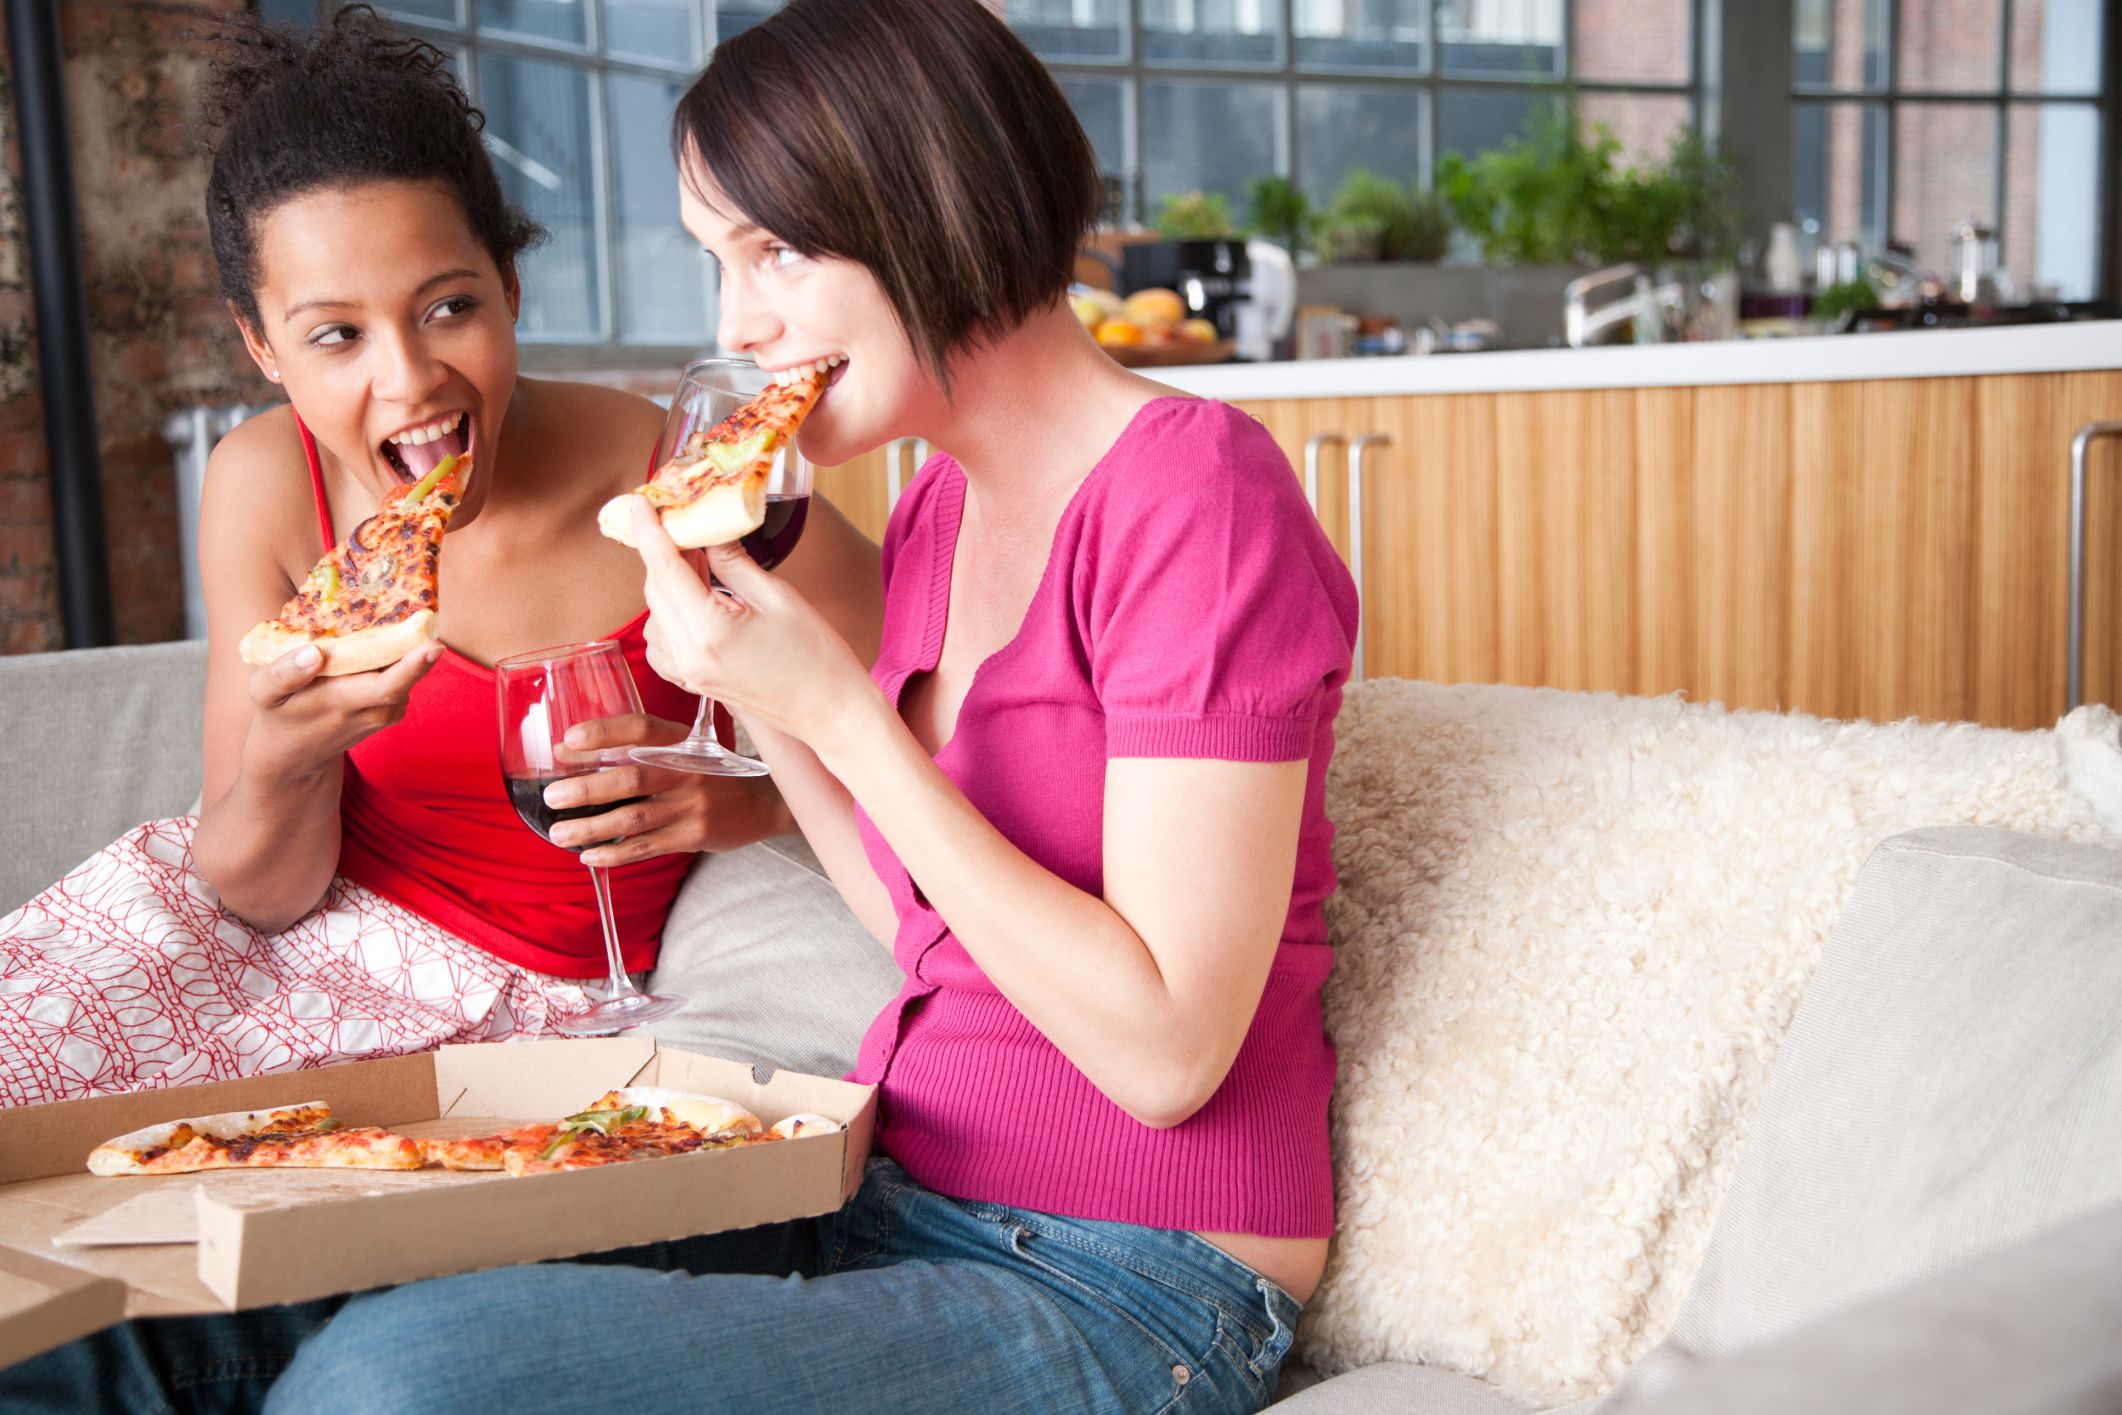 Хотеть сидеть предложение. Пицца женщина. Девушка наслаждение пиццей. Аппетитная пища и люди. Люди едят пиццу.